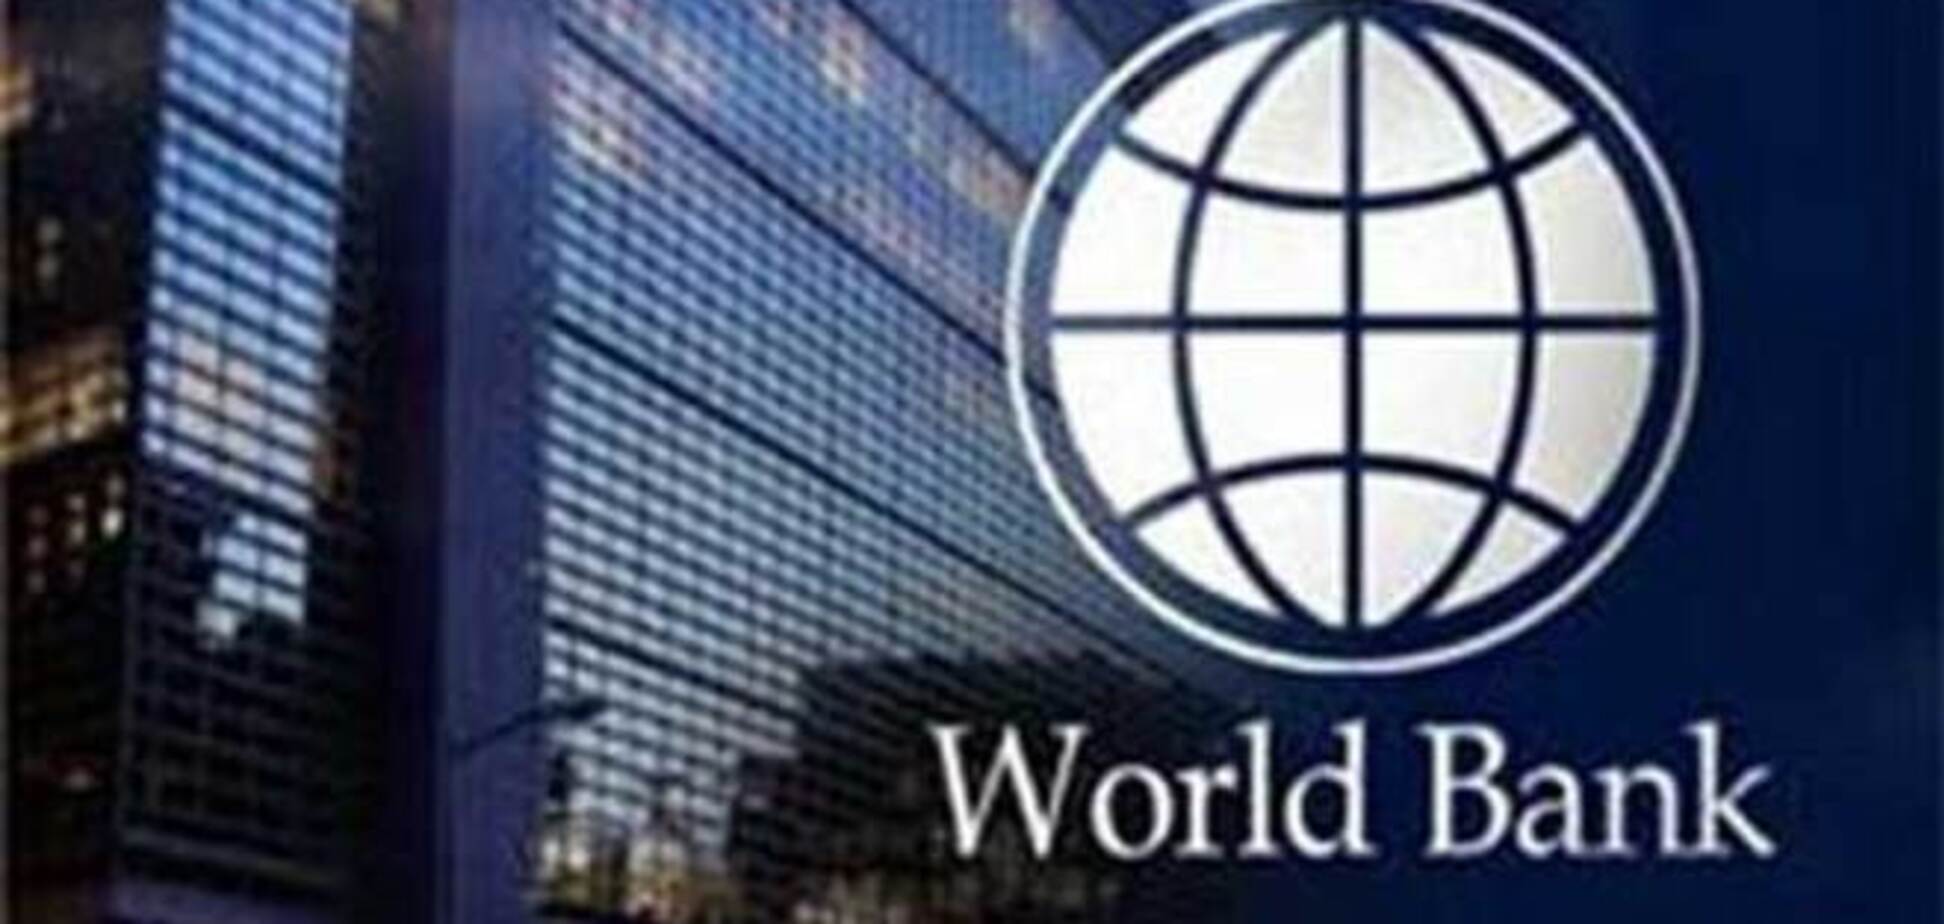 Всемирный банк требует принять 7 законов в обмен на кредит. Документ